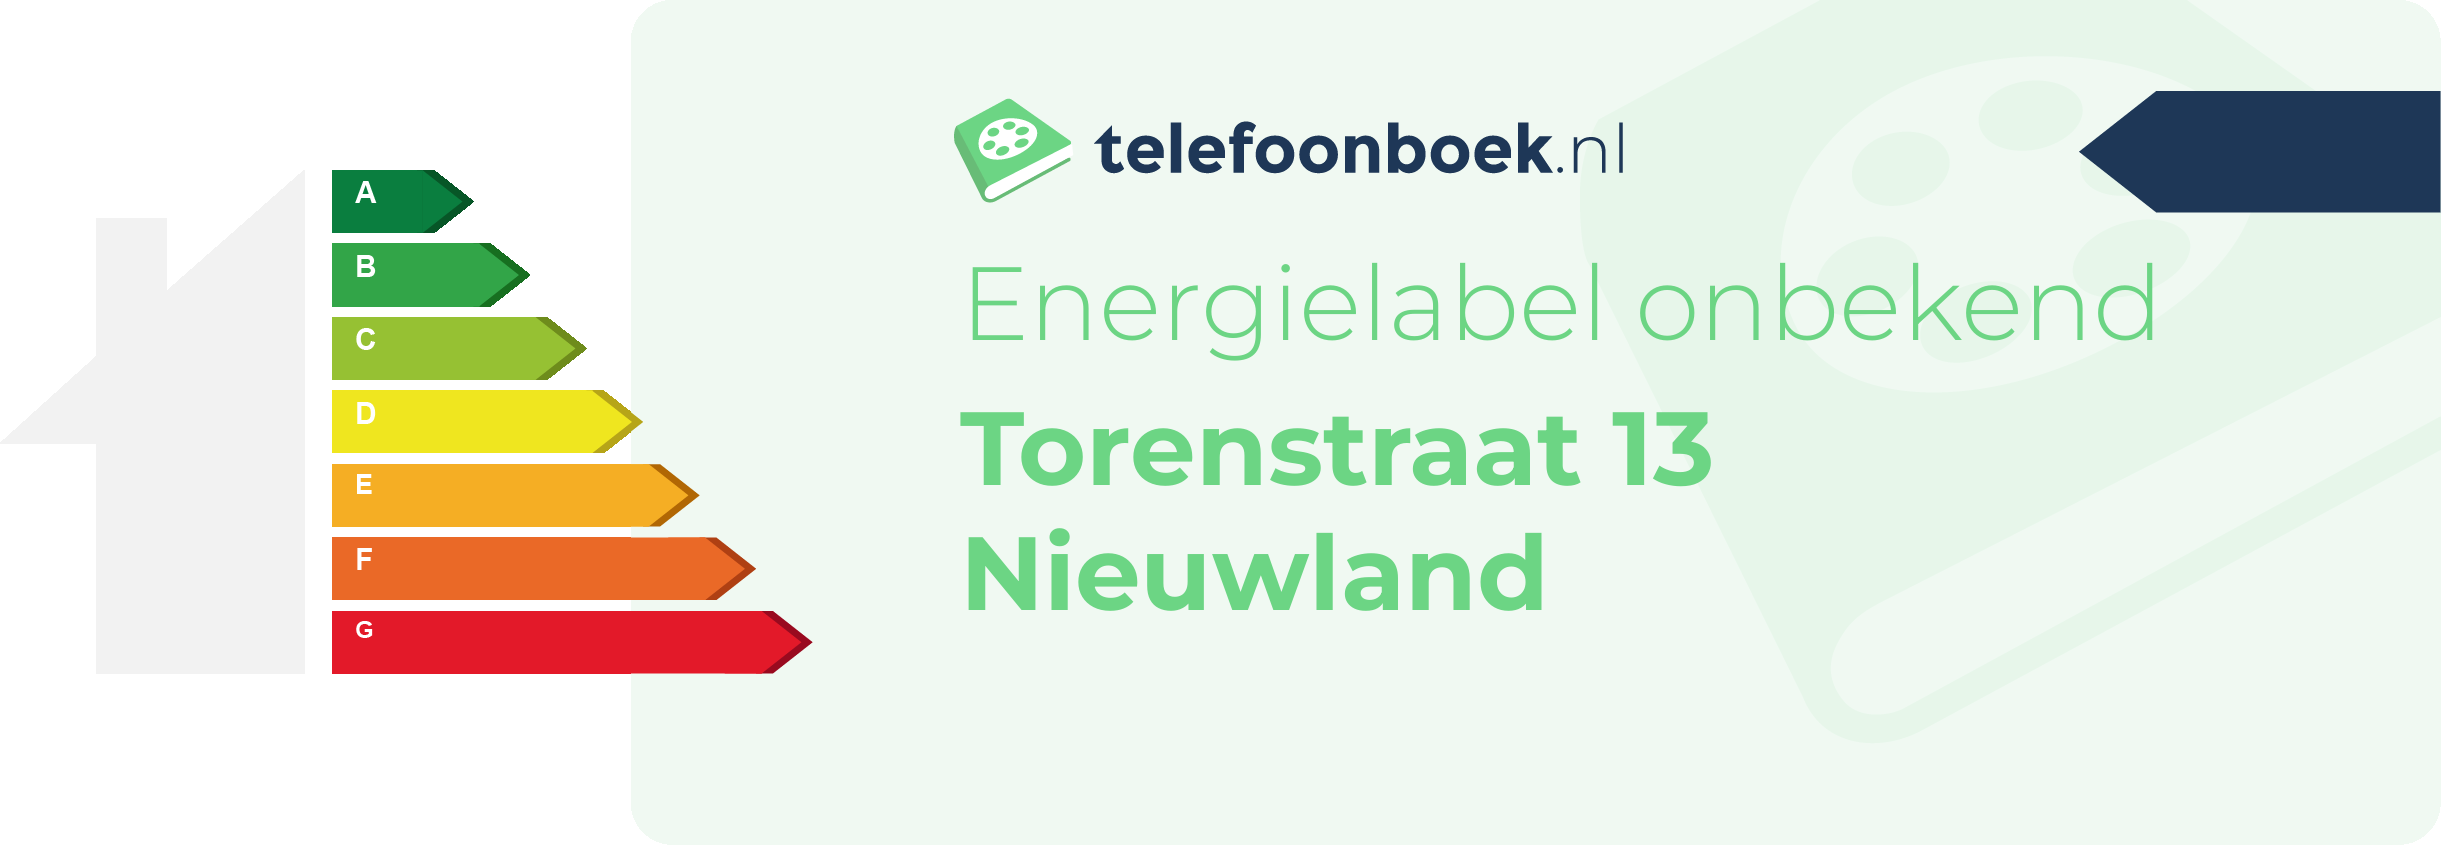 Energielabel Torenstraat 13 Nieuwland